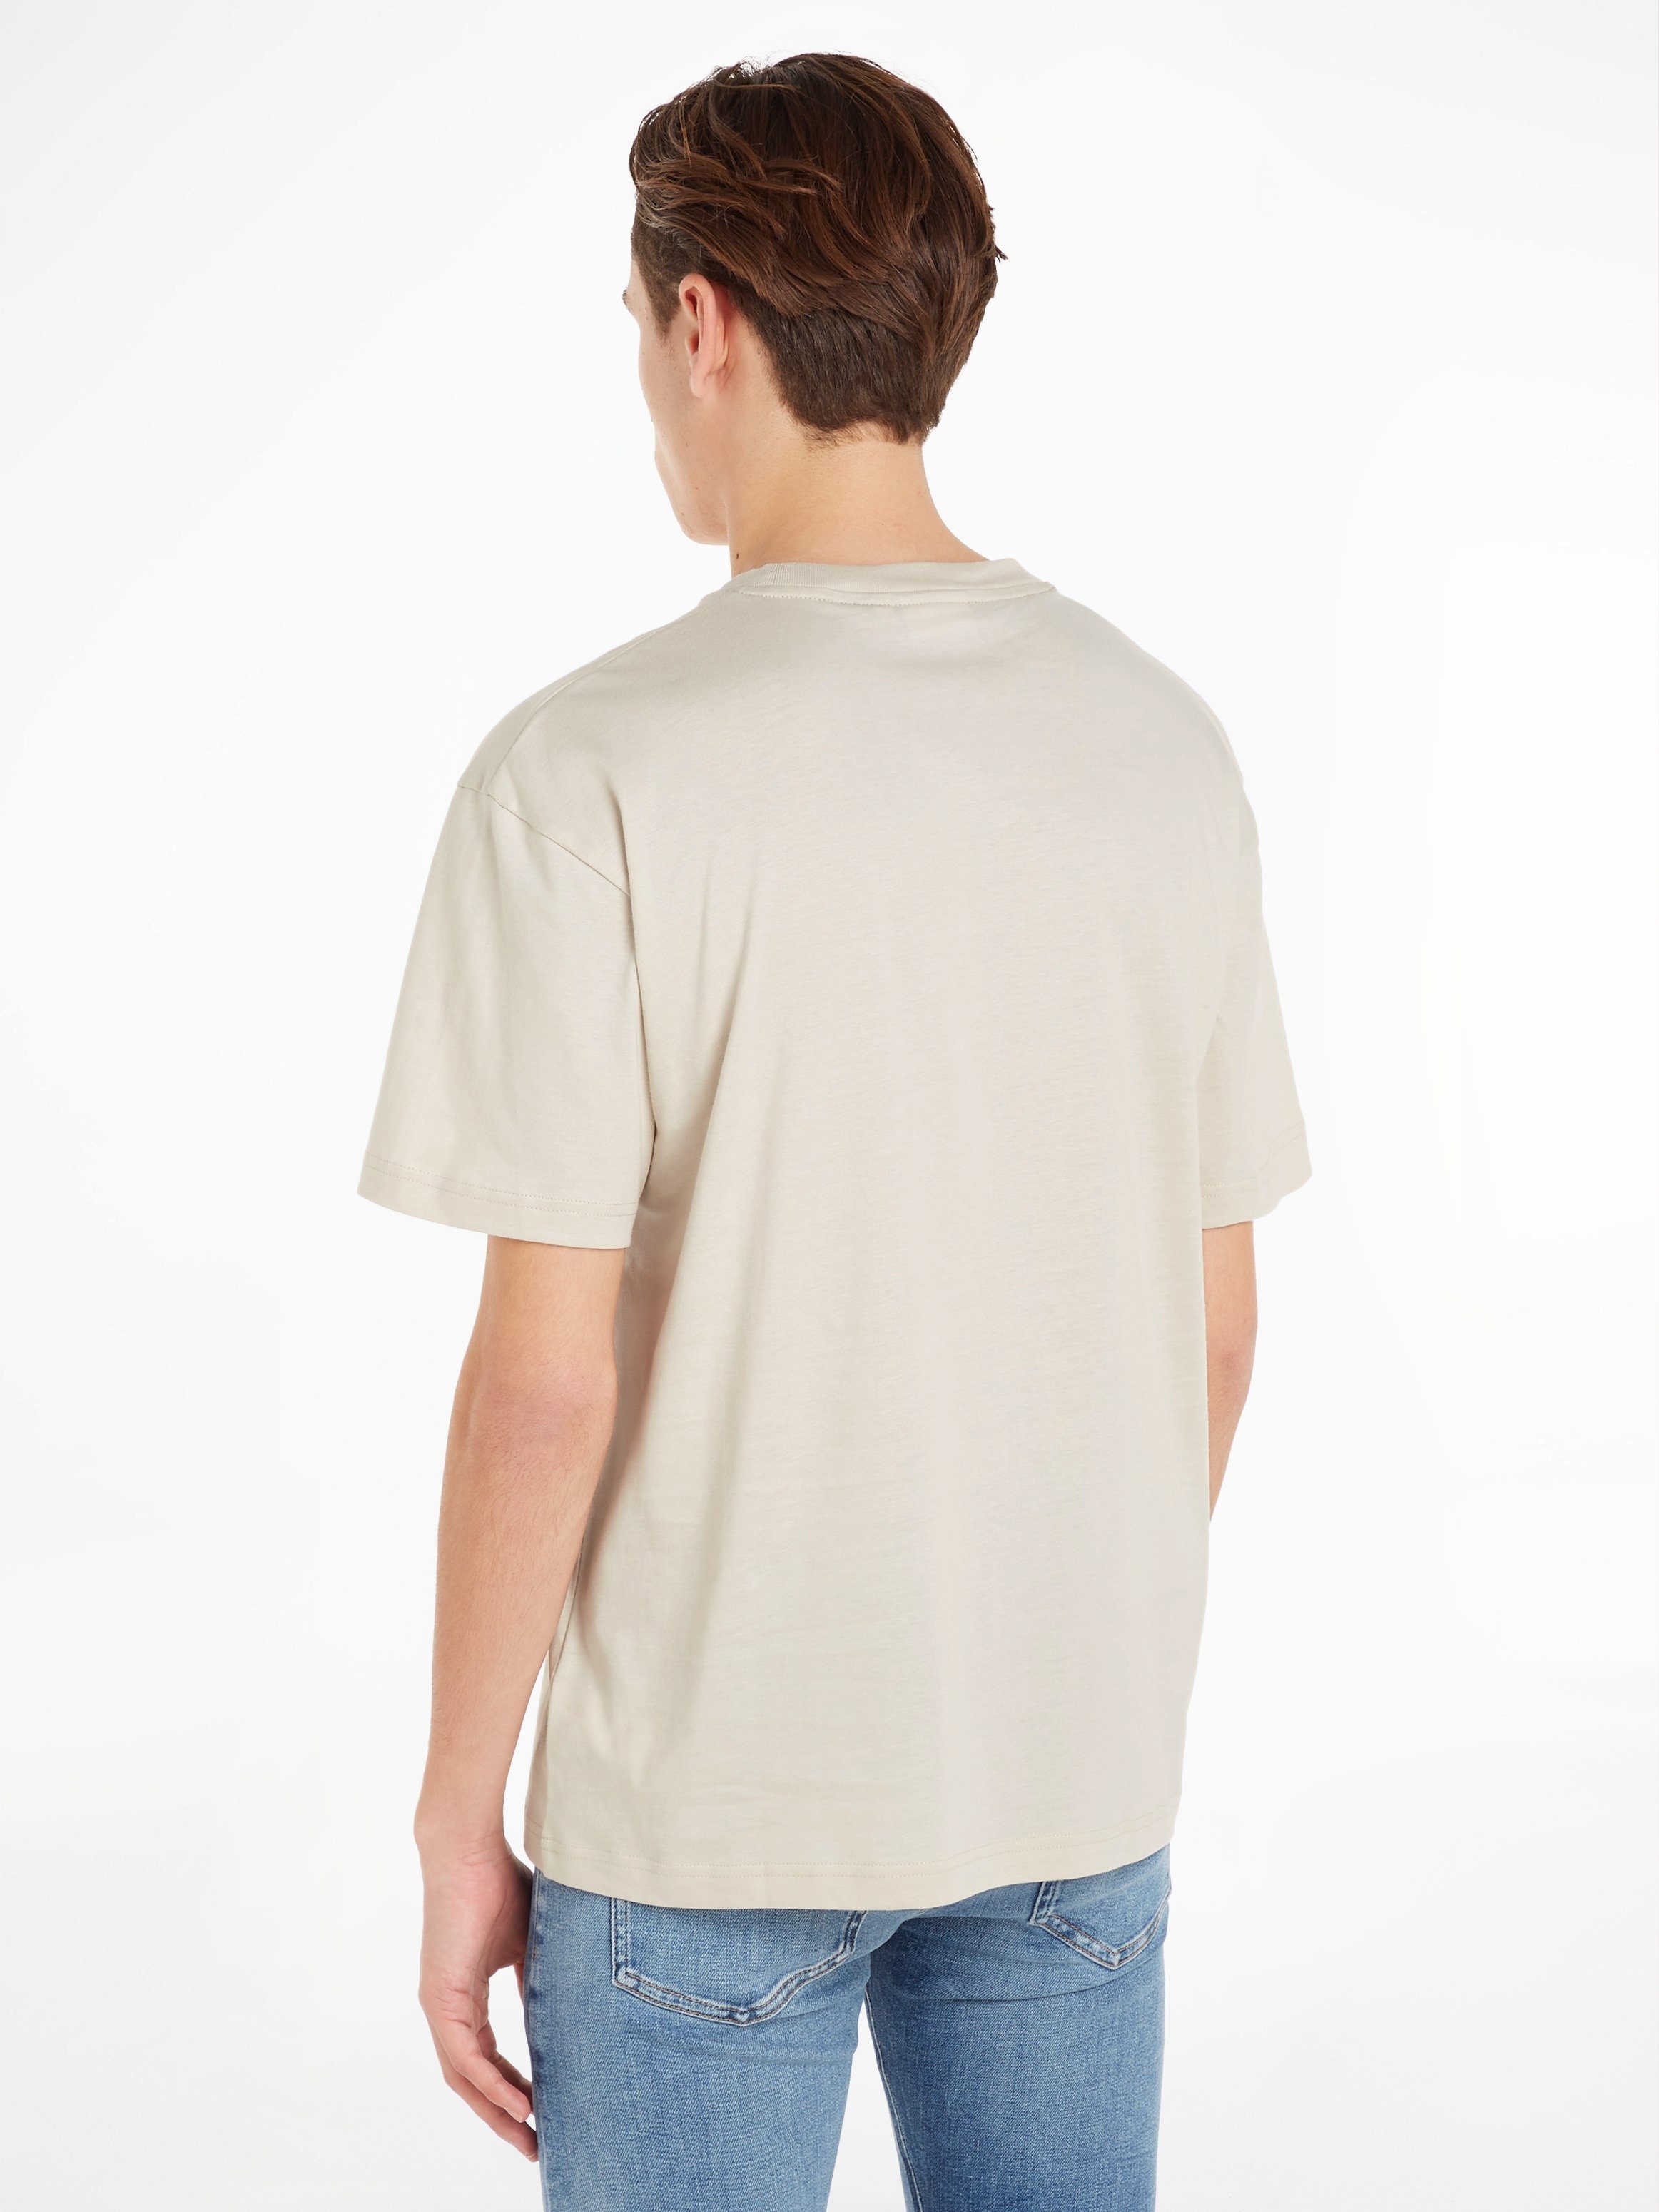 Markenlabel COMFORT Klein aufgedrucktem Calvin Stony Beige HERO LOGO T-Shirt T-SHIRT mit